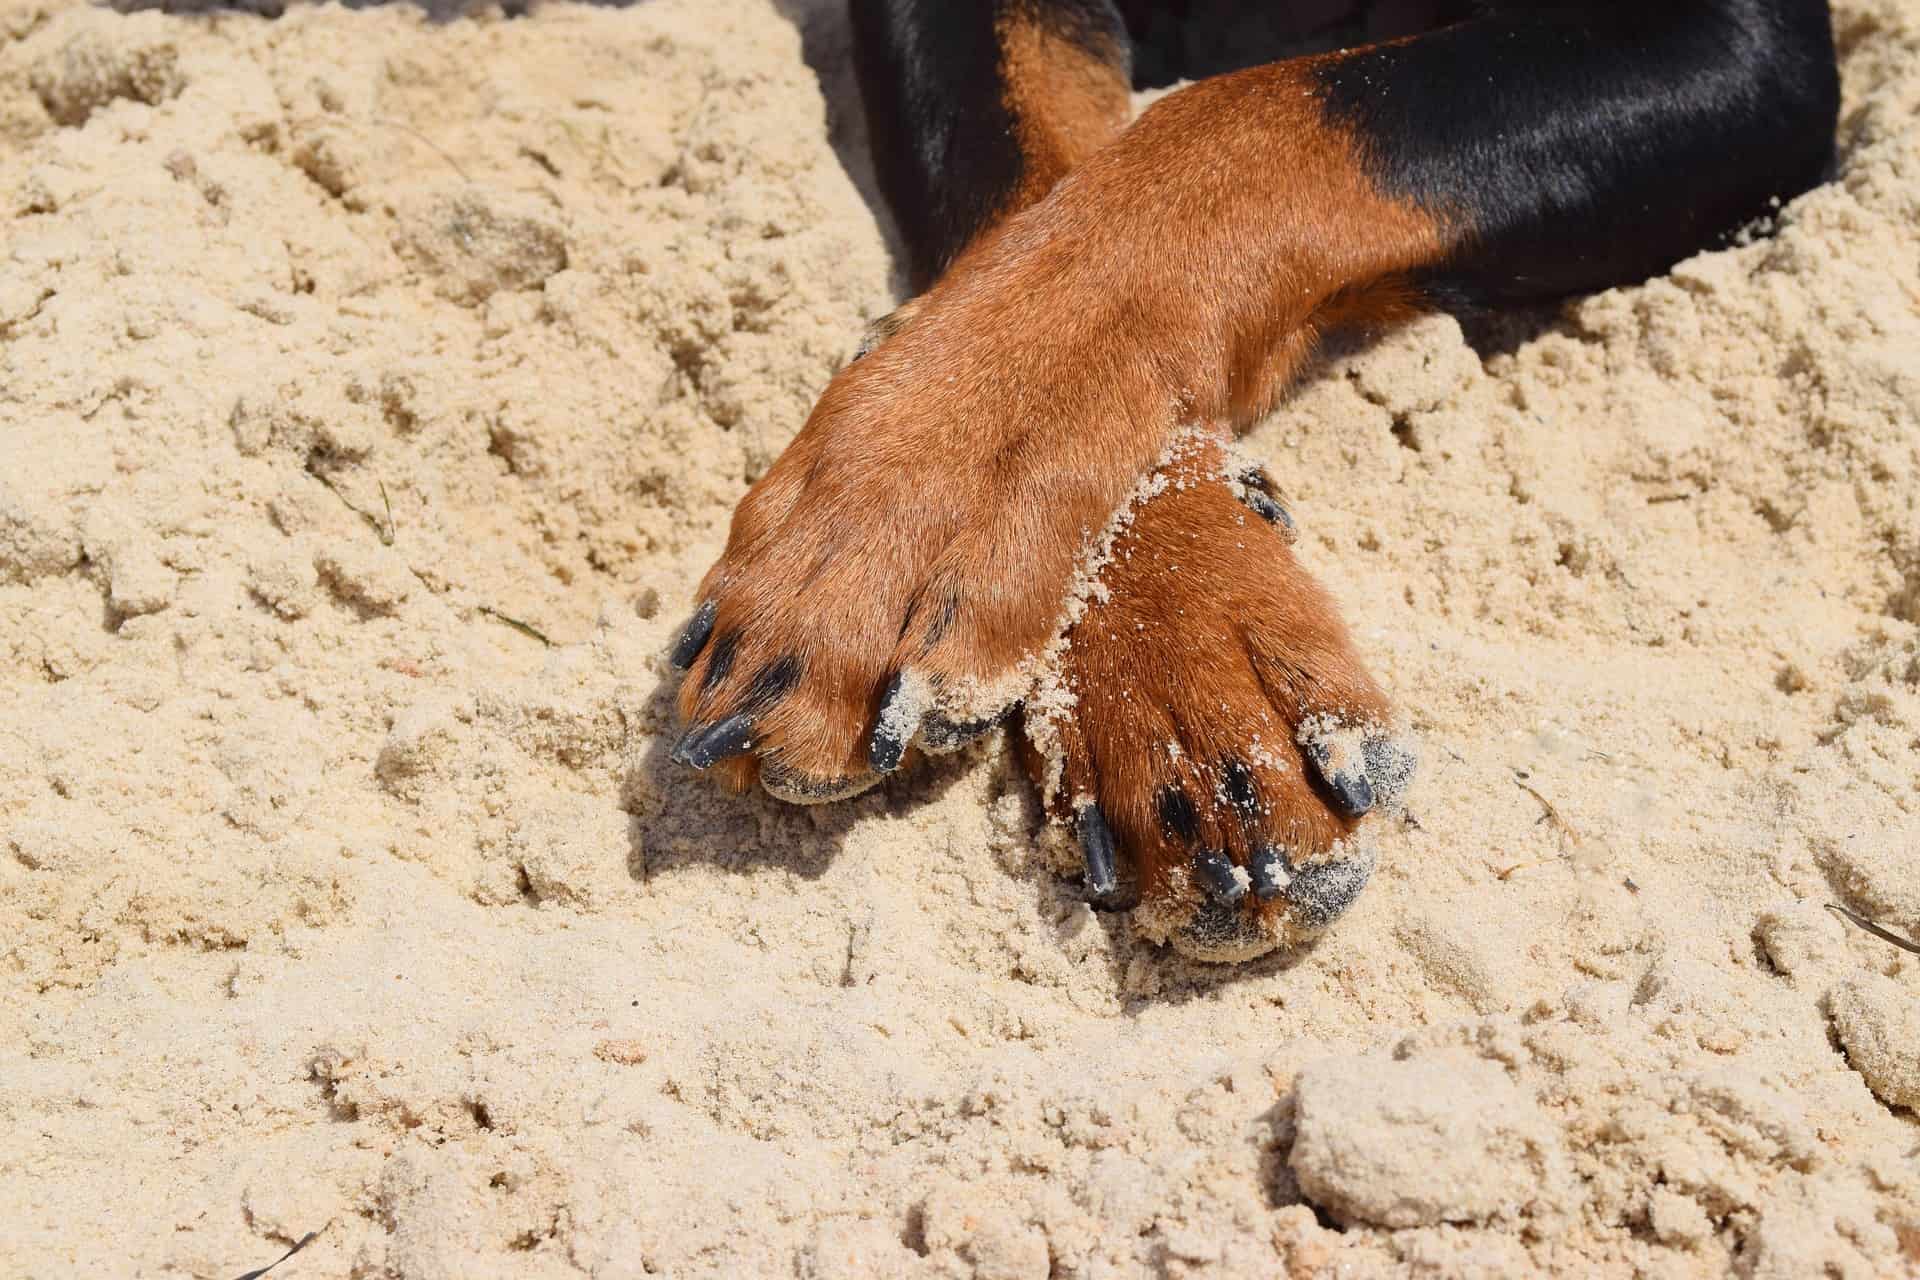 Hundepfoten im Sand, Krallenpflege ist sehr wichtig für die Gesundheit des Hundes. /Foto: nika22121991 (pixabay)